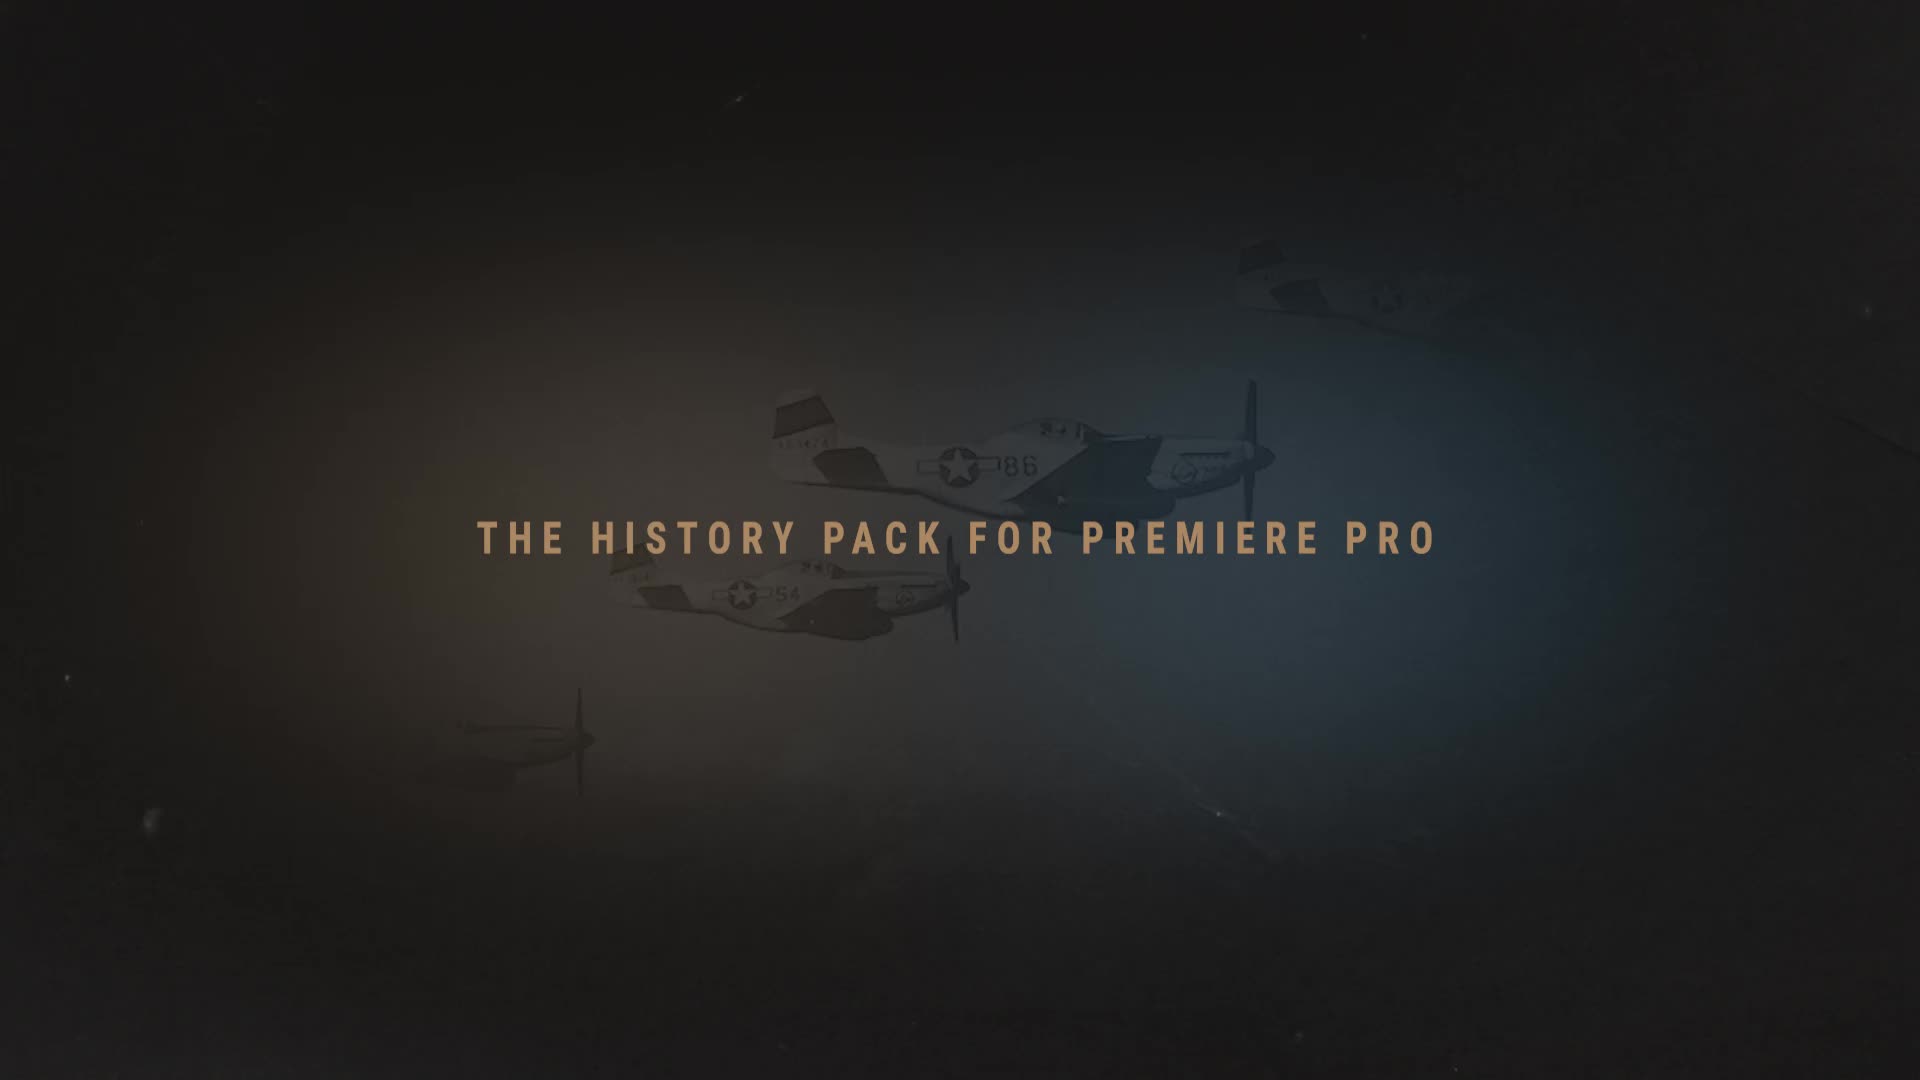 The History Presentation Premiere Pro Videohive 24594973 Premiere Pro Image 1